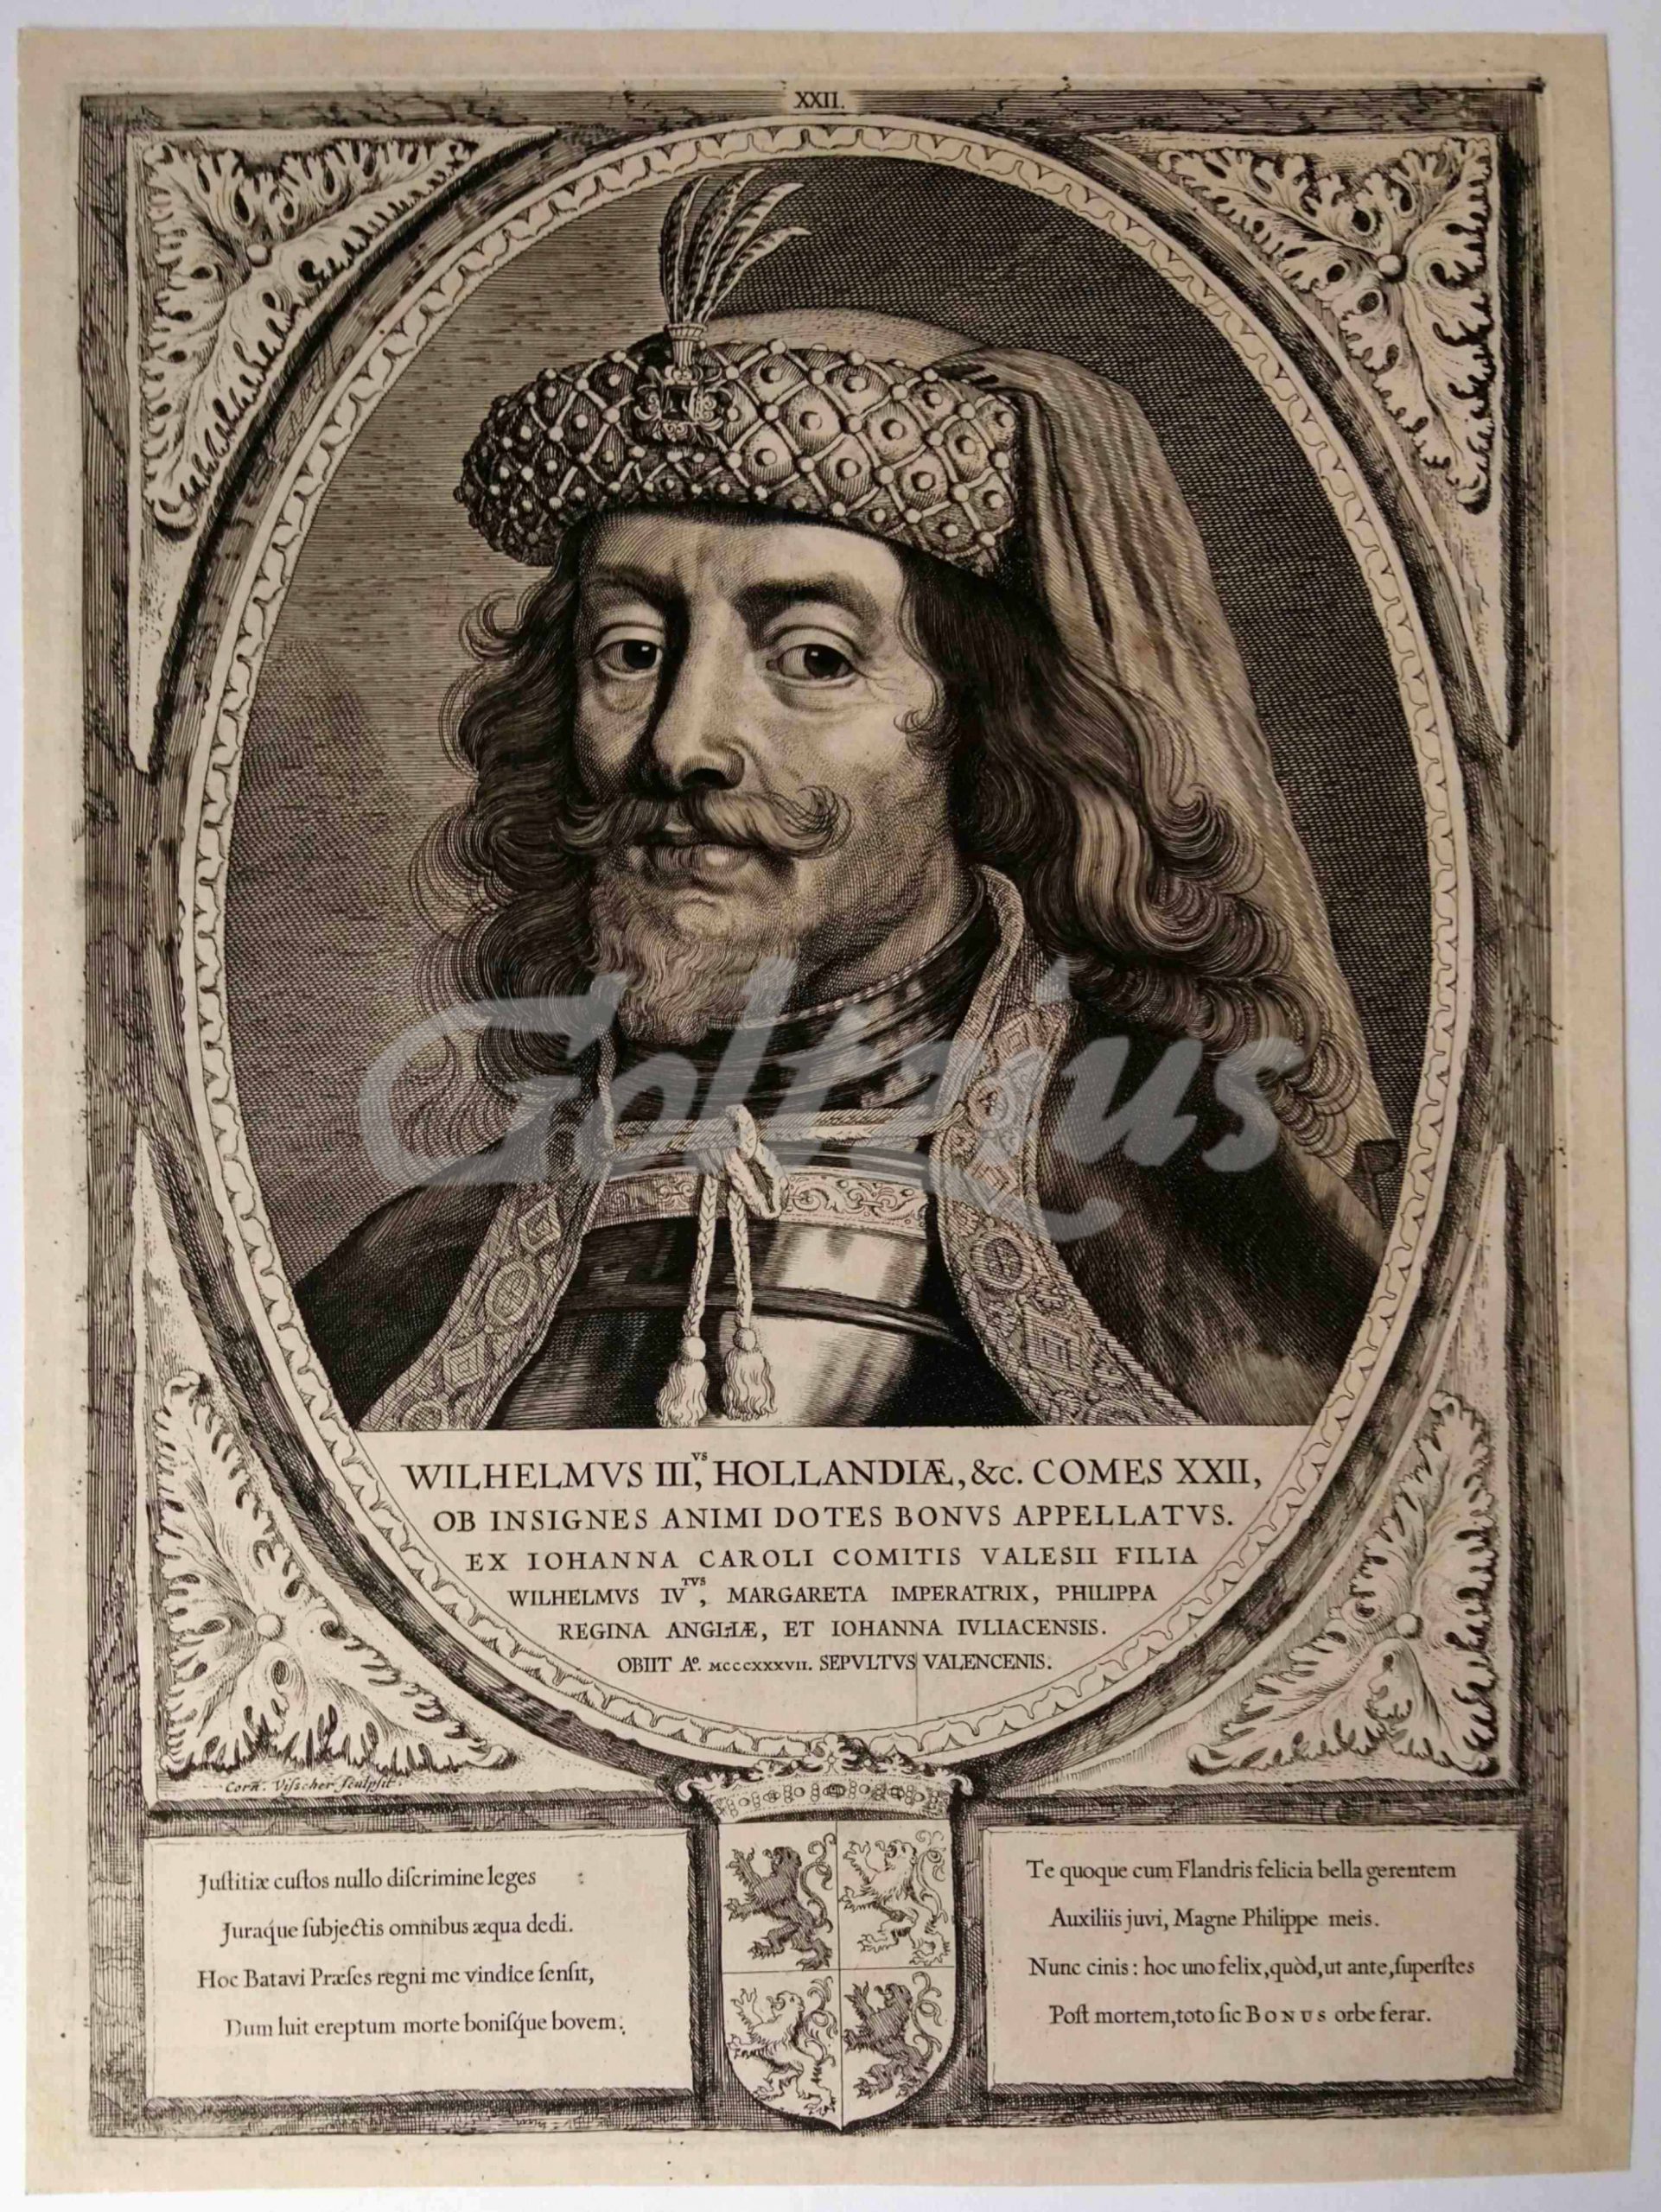 VISSCHER, CORNELIS, Portrait of William III, Count of Holland